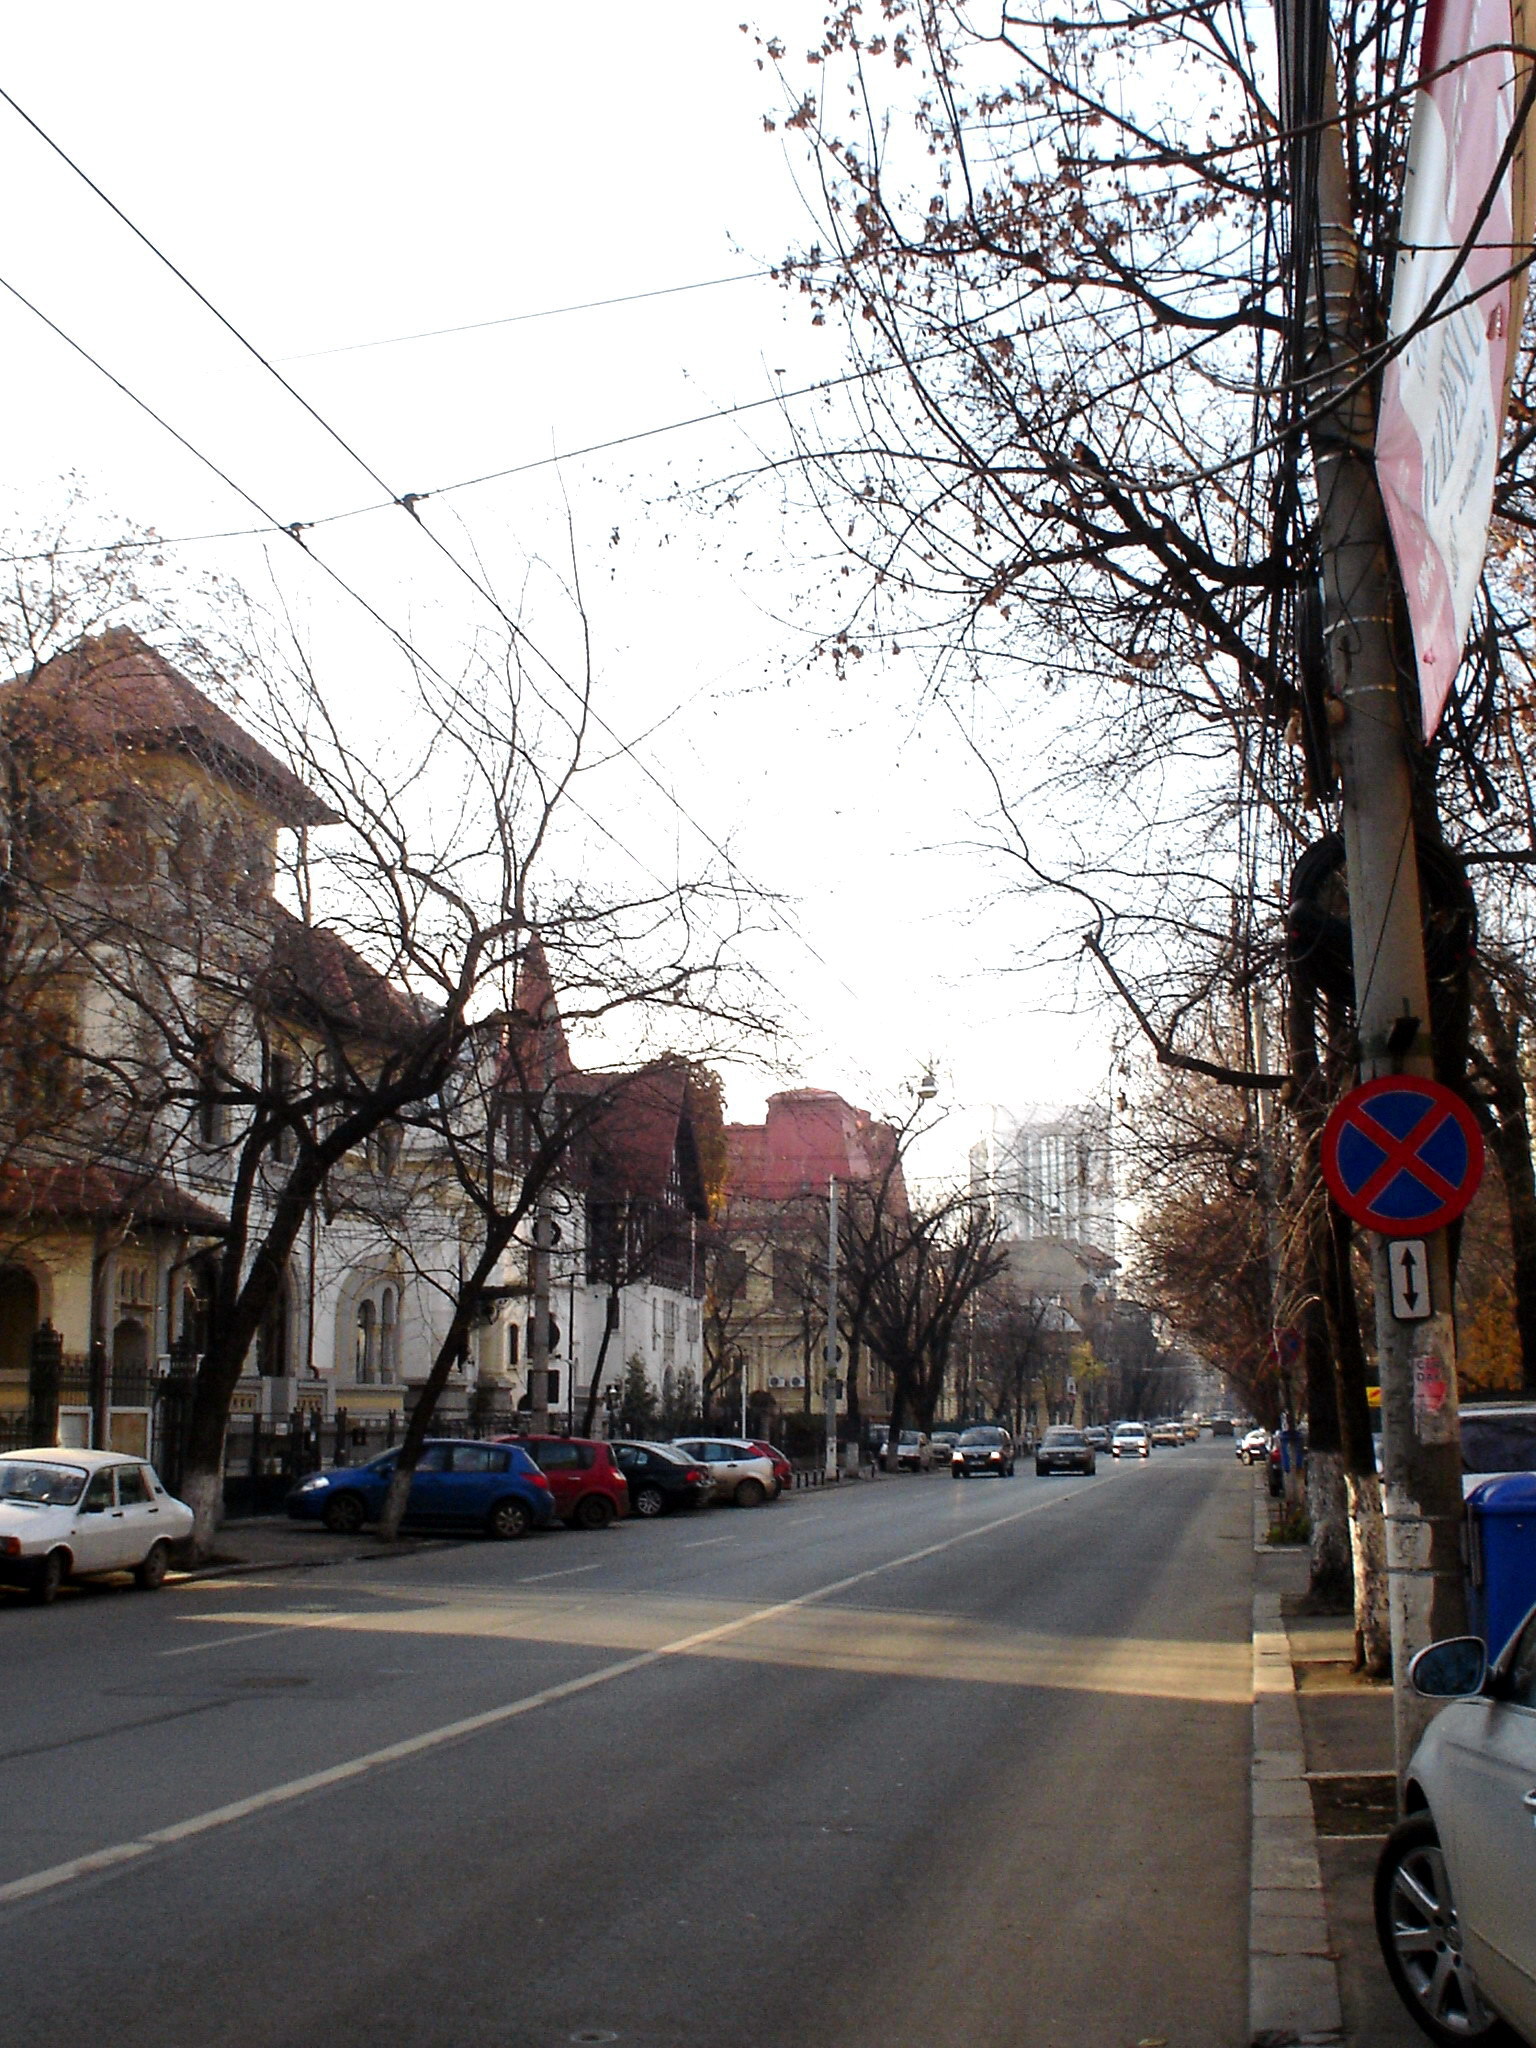 Străzile Bucureştilor – mică istorie sentimentală în imagini (XLII). Bulevardul Dacia/ de Dr. Alexandru Popescu